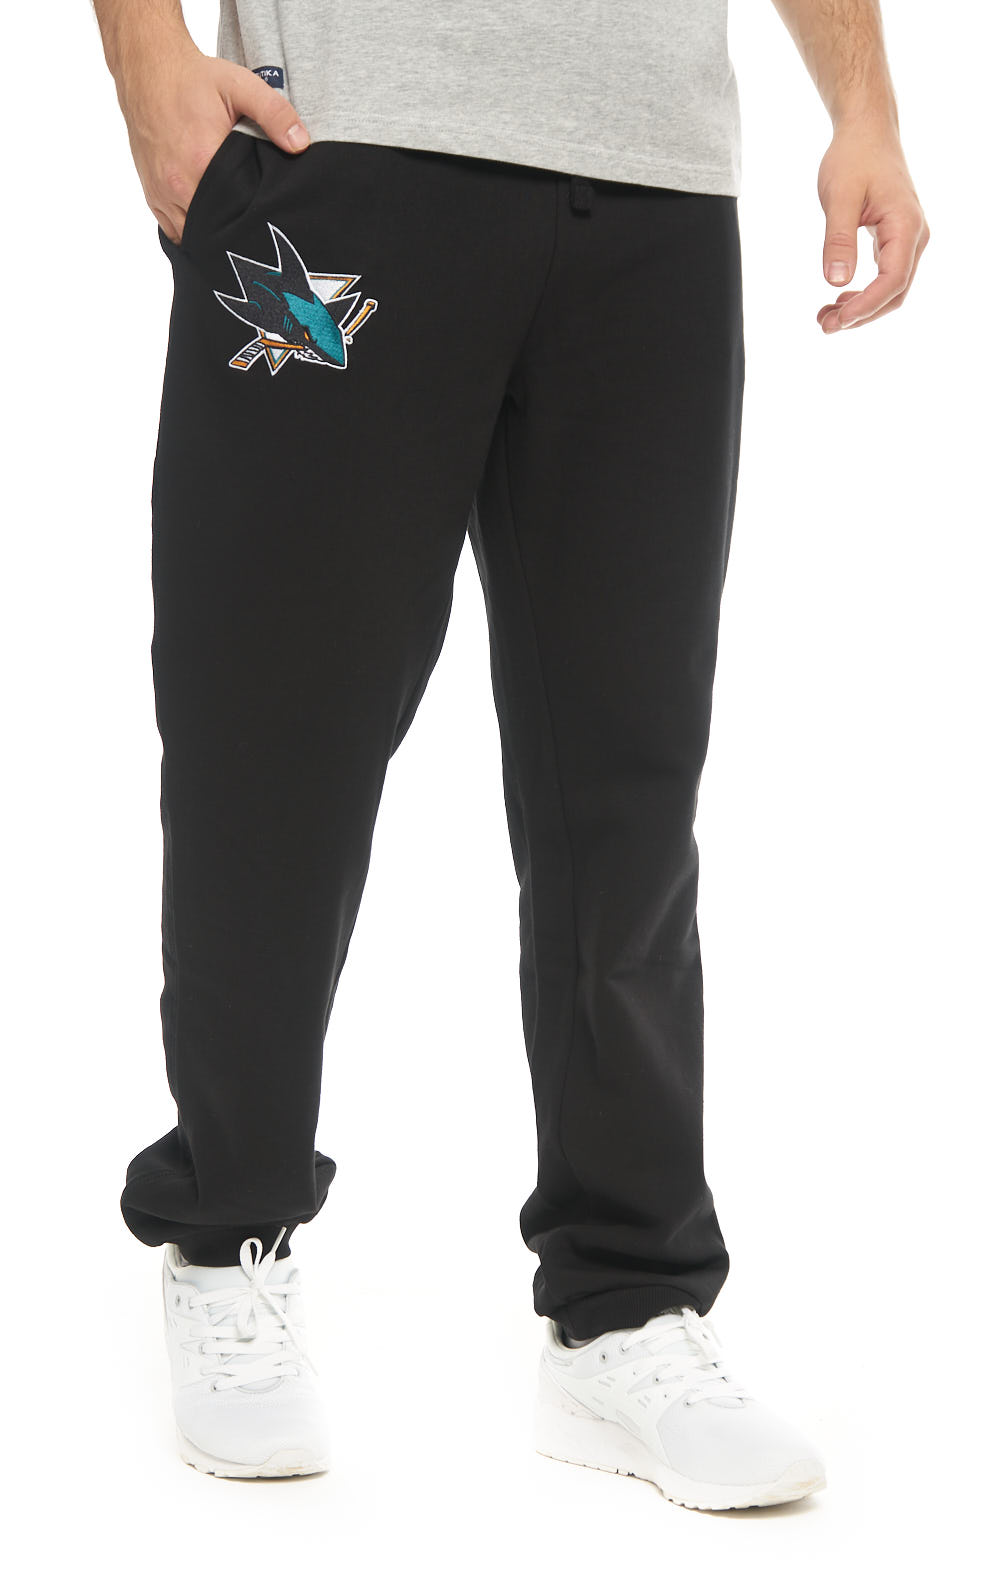 Спортивные брюки мужские Atributika&Club Сан-Хосе Шаркс 45830 черные L